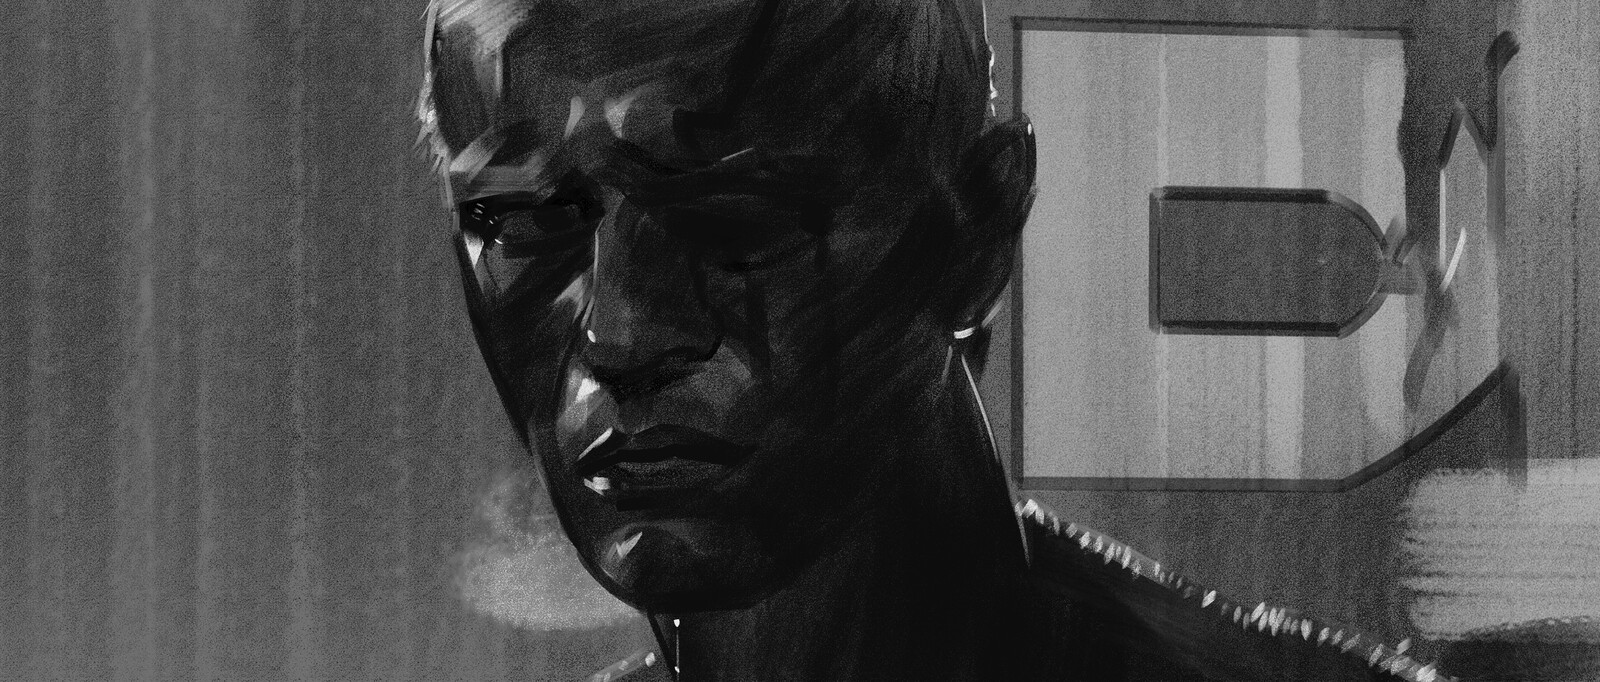 Film Study | Blade Runner